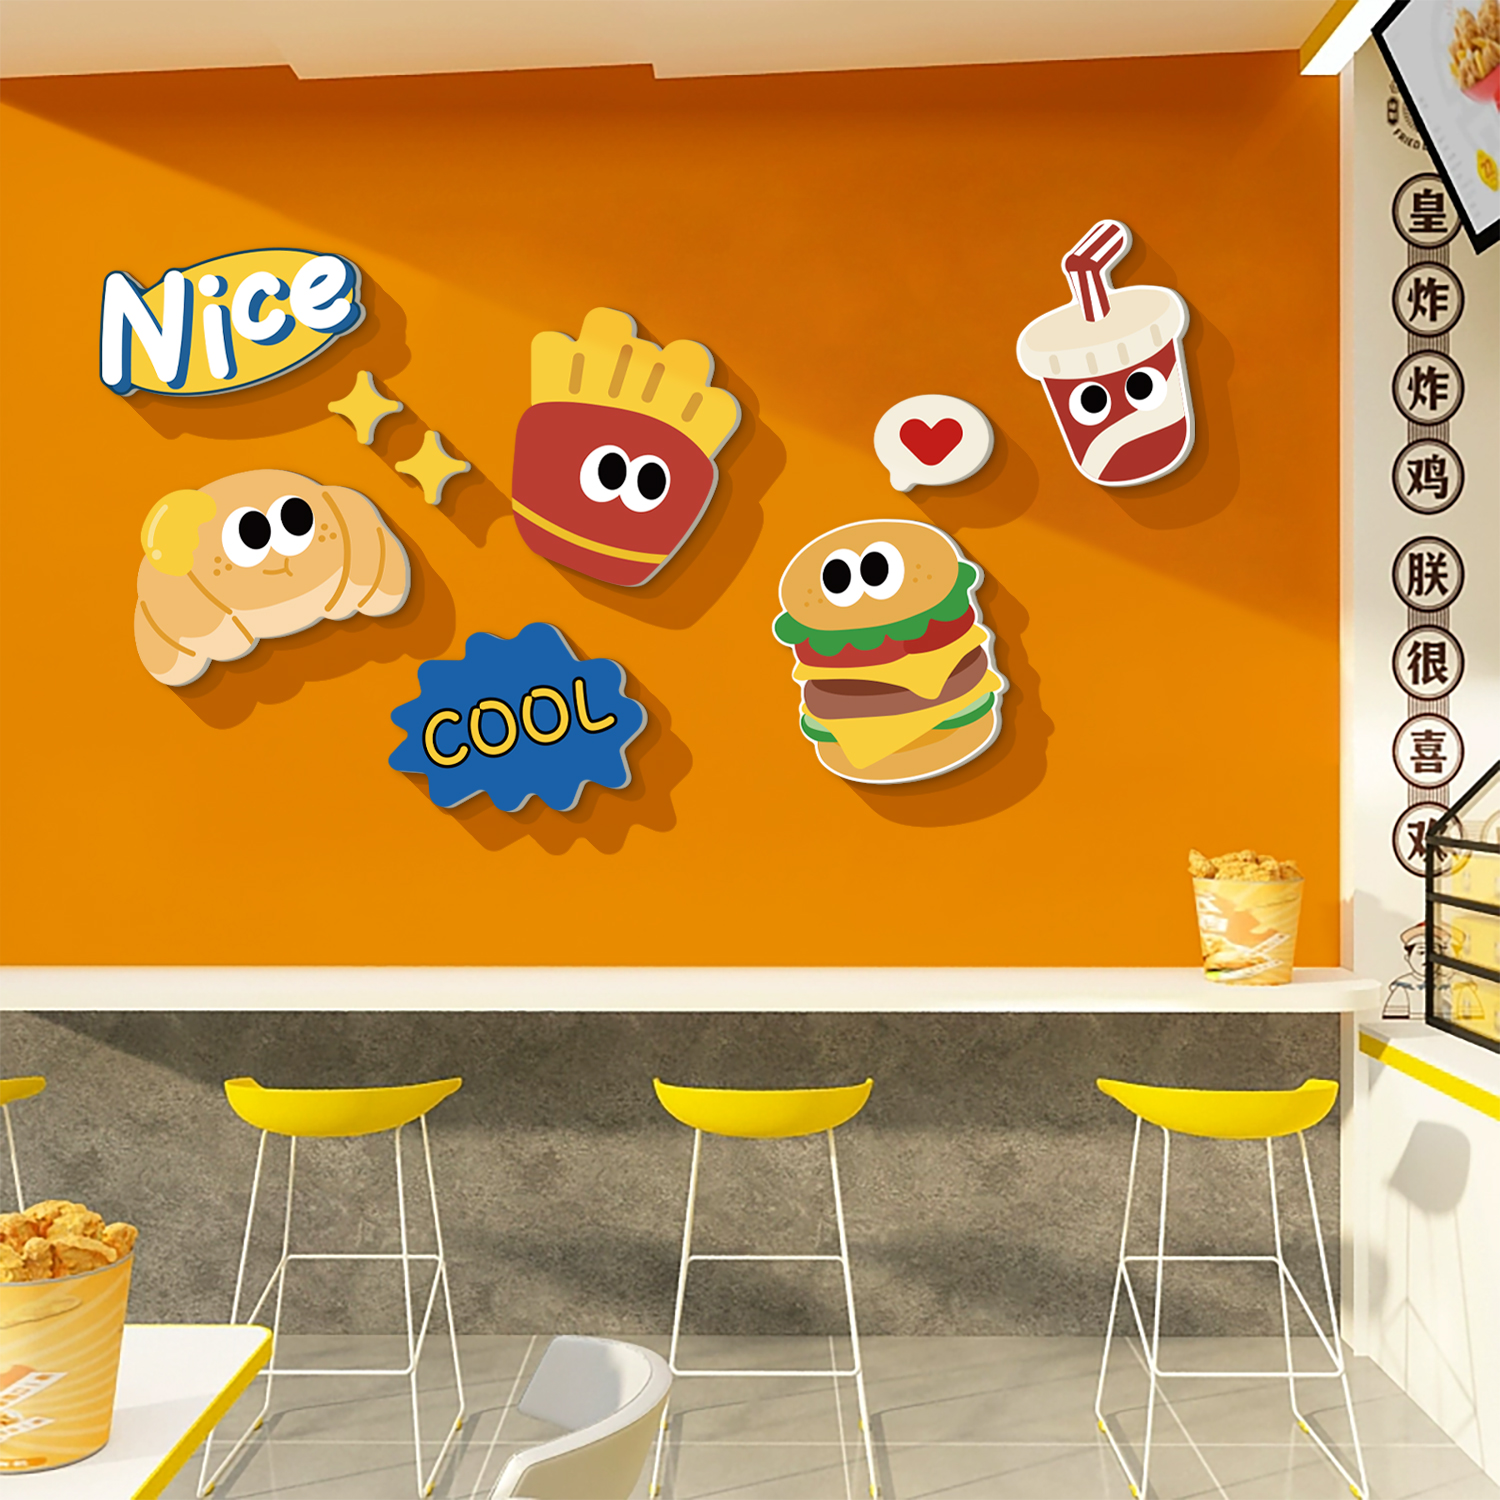 网红炸鸡厅墙面装饰贴汉堡披萨小吃店铺广告海报宣传背景布置创意